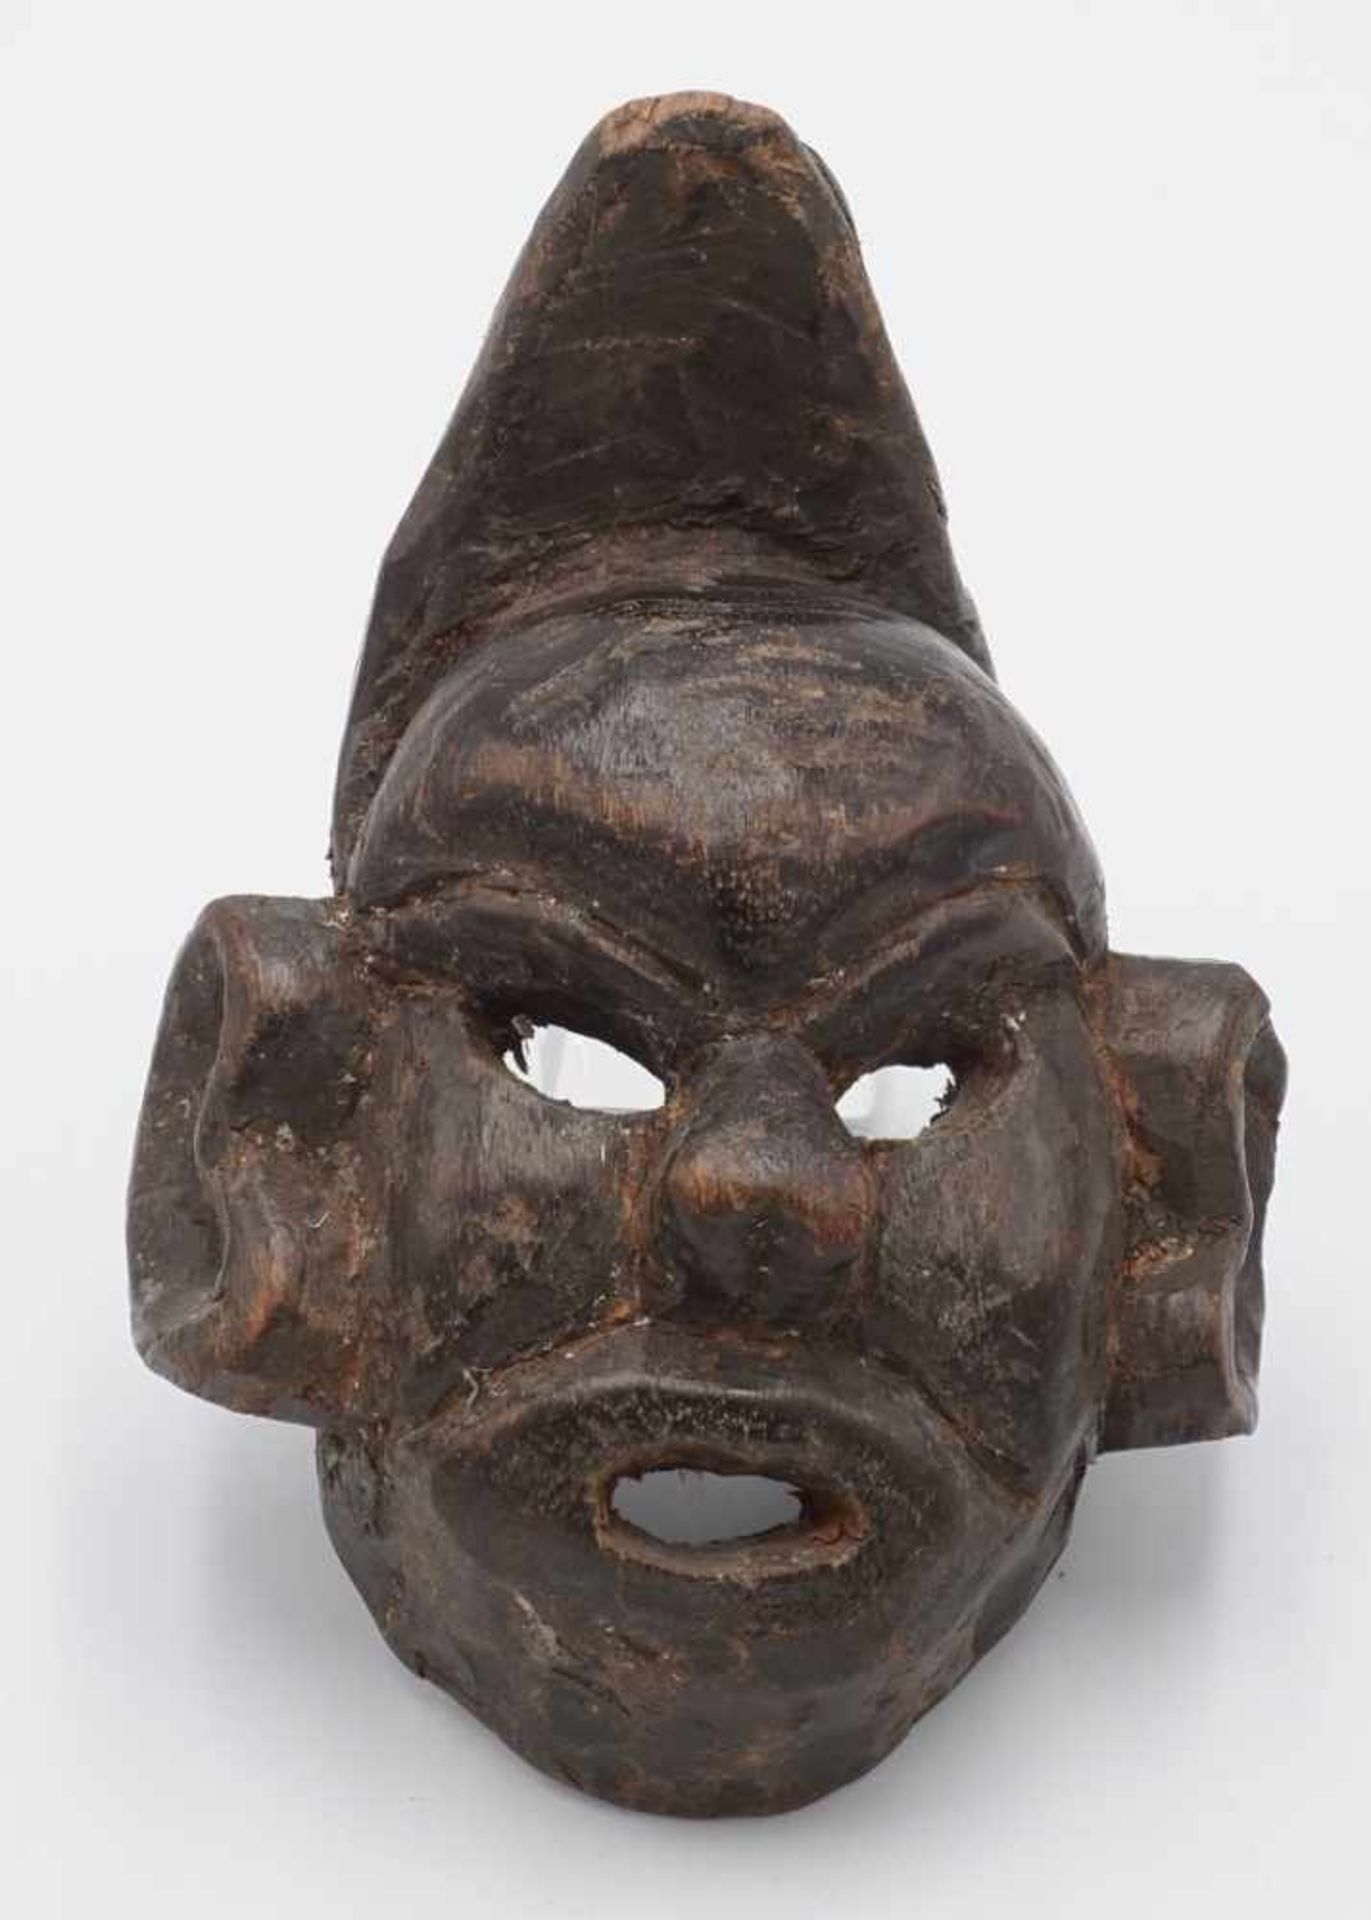 Kleine Maske, Nepal, um 1920Holz dunkel gebeizt, geschnitzt, Mund und Augen offen, Reptil als